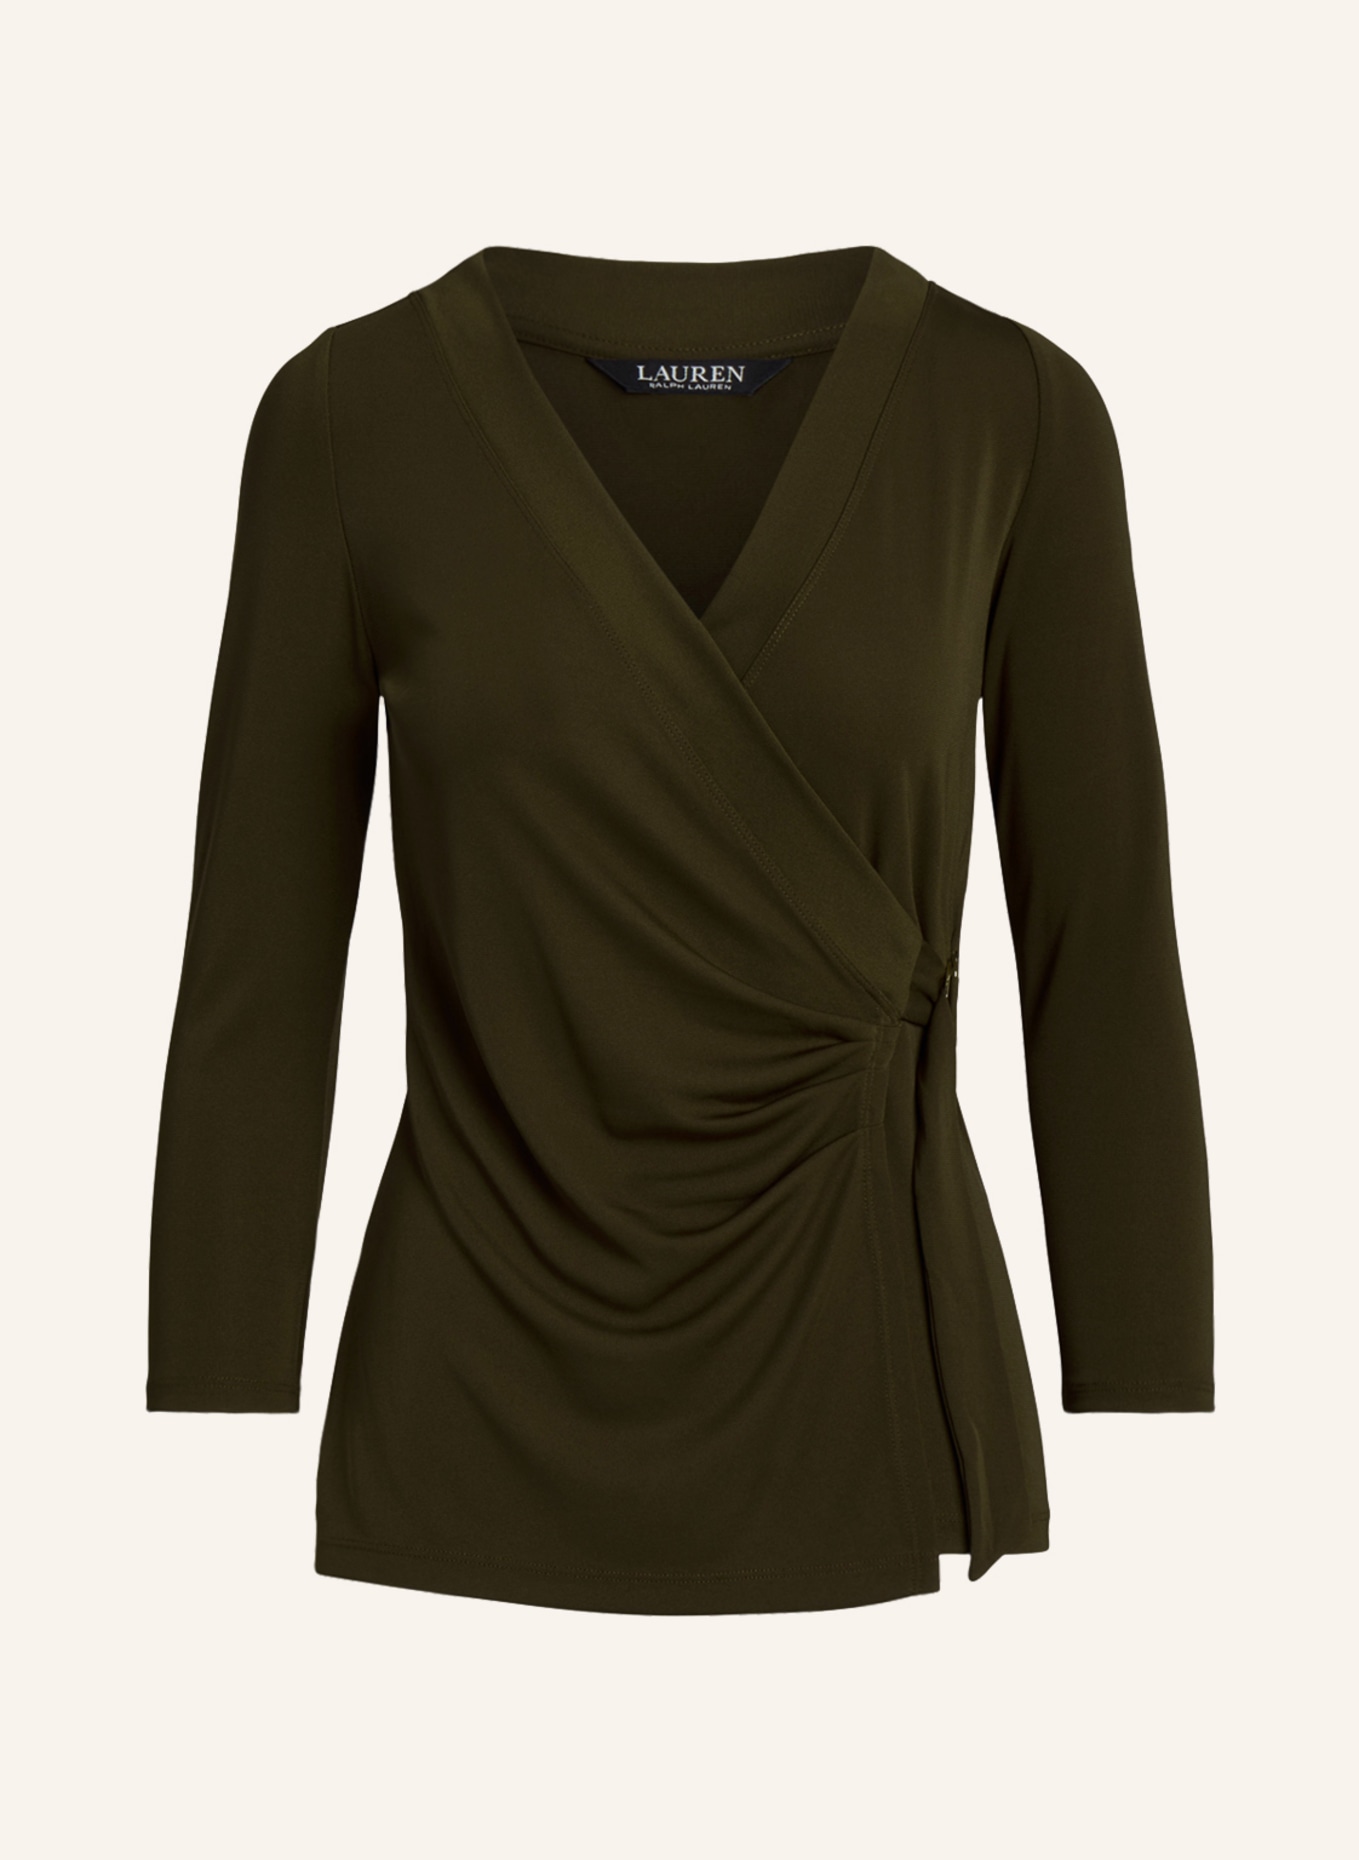 LAUREN RALPH LAUREN Shirt in wrap look with 3/4 sleeves, Color: DARK GREEN (Image 1)